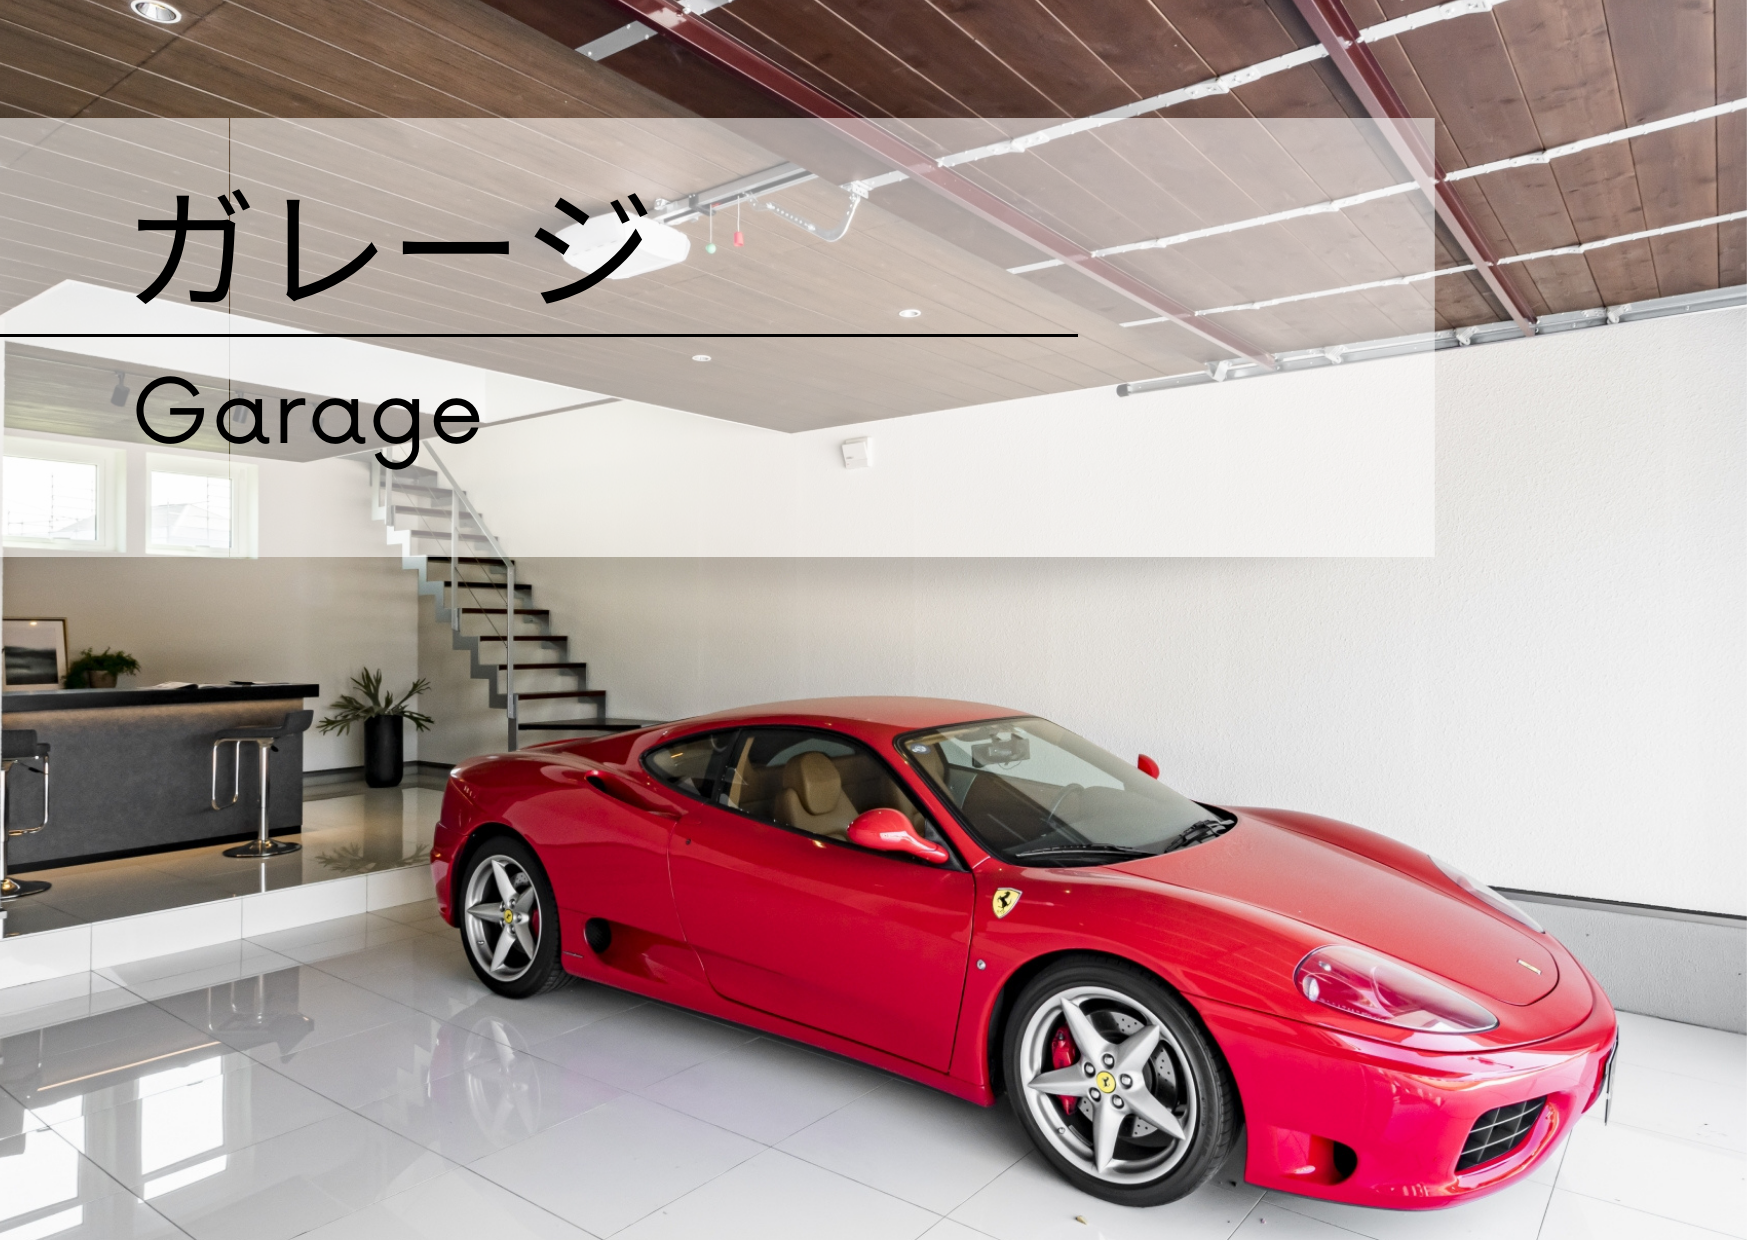 ガレージ -Garage-